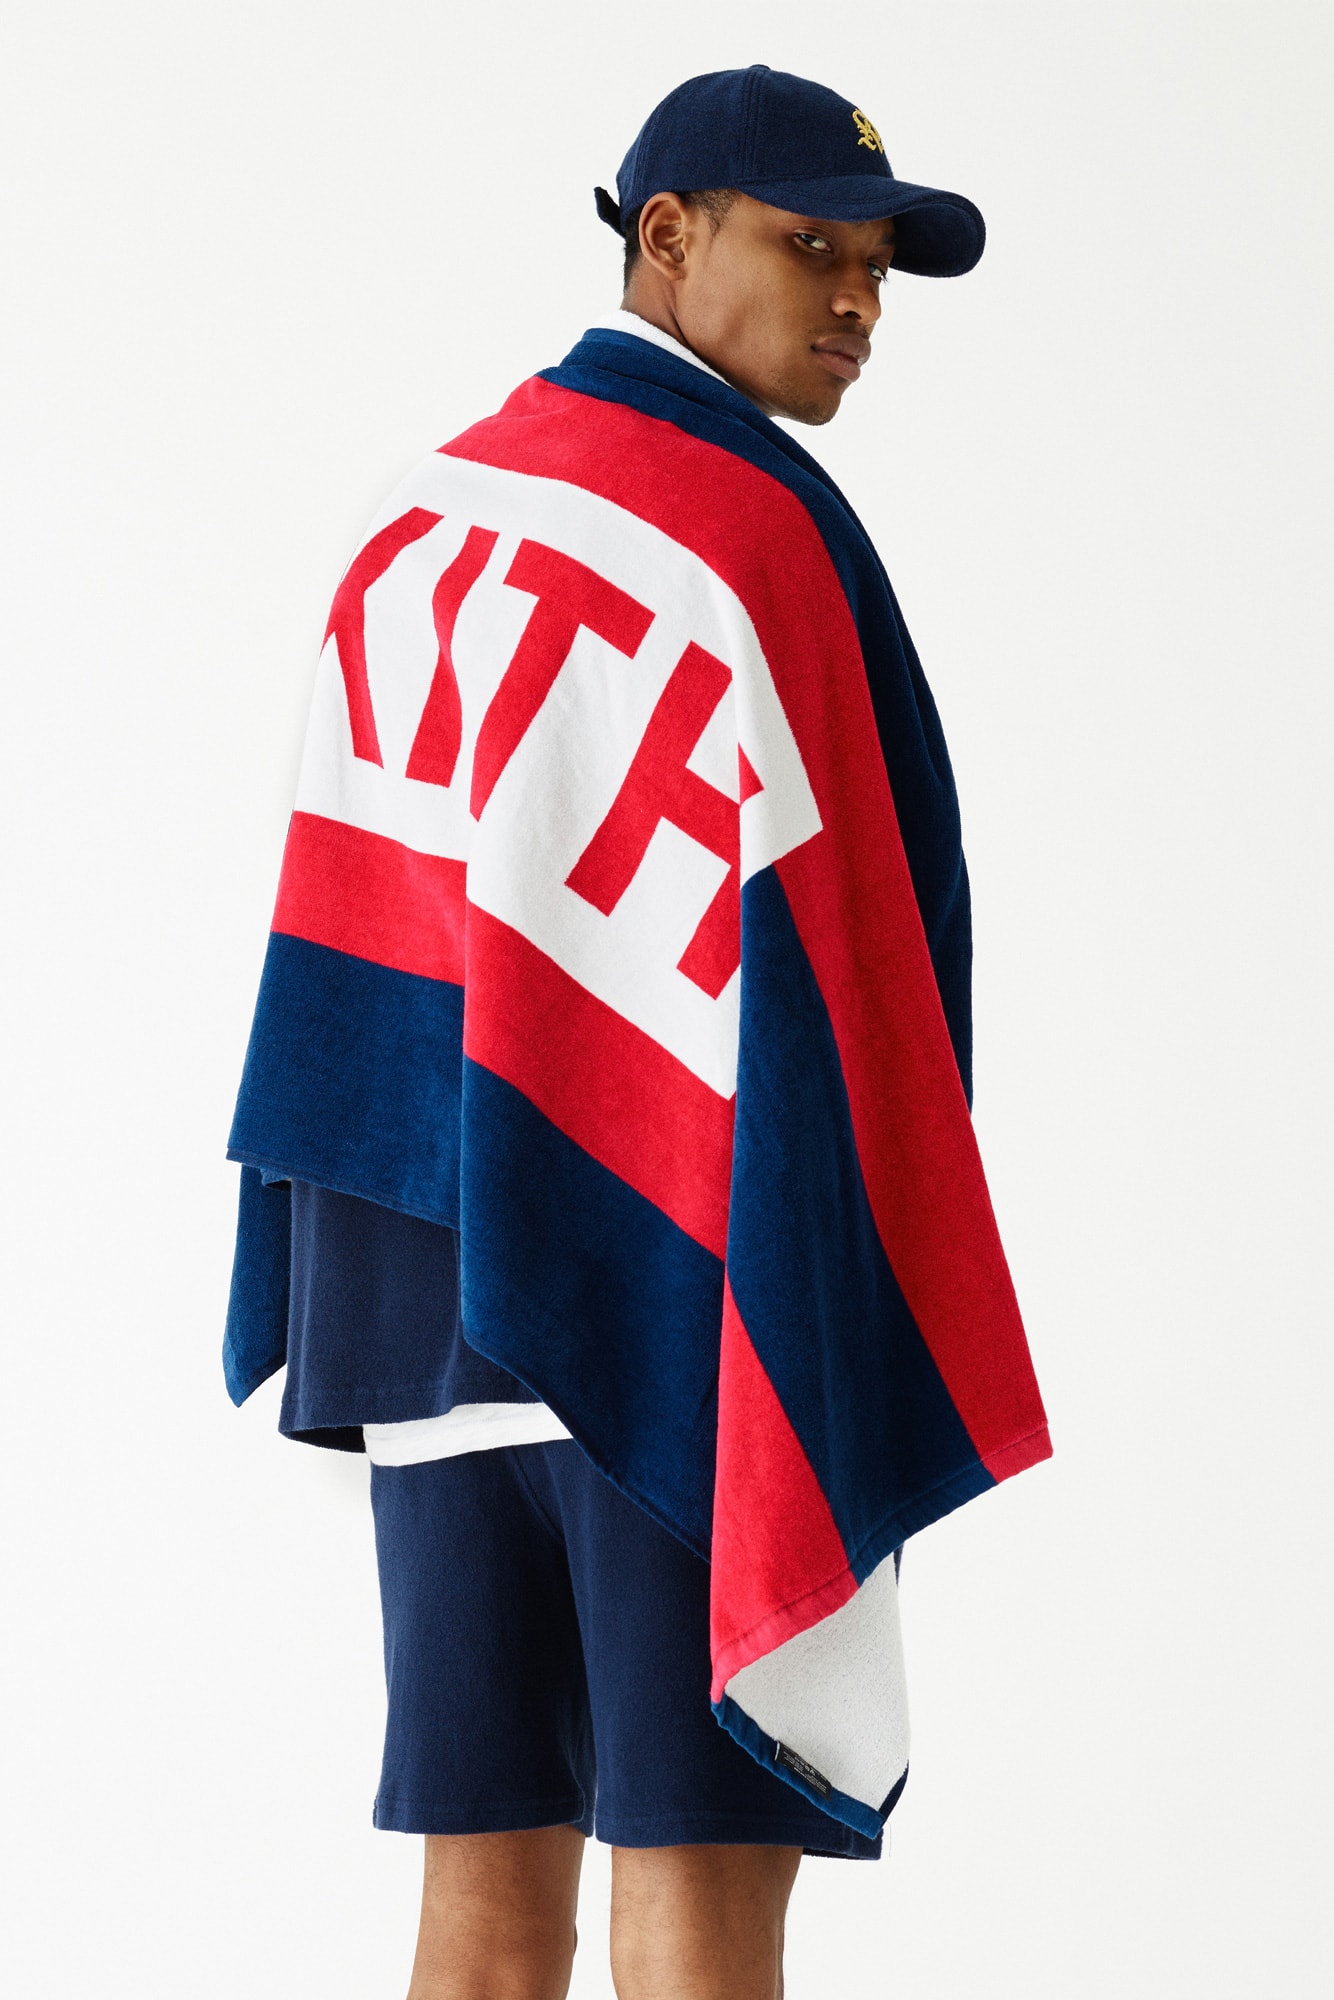 kith summer 2018 collection fashion ronnie fieg